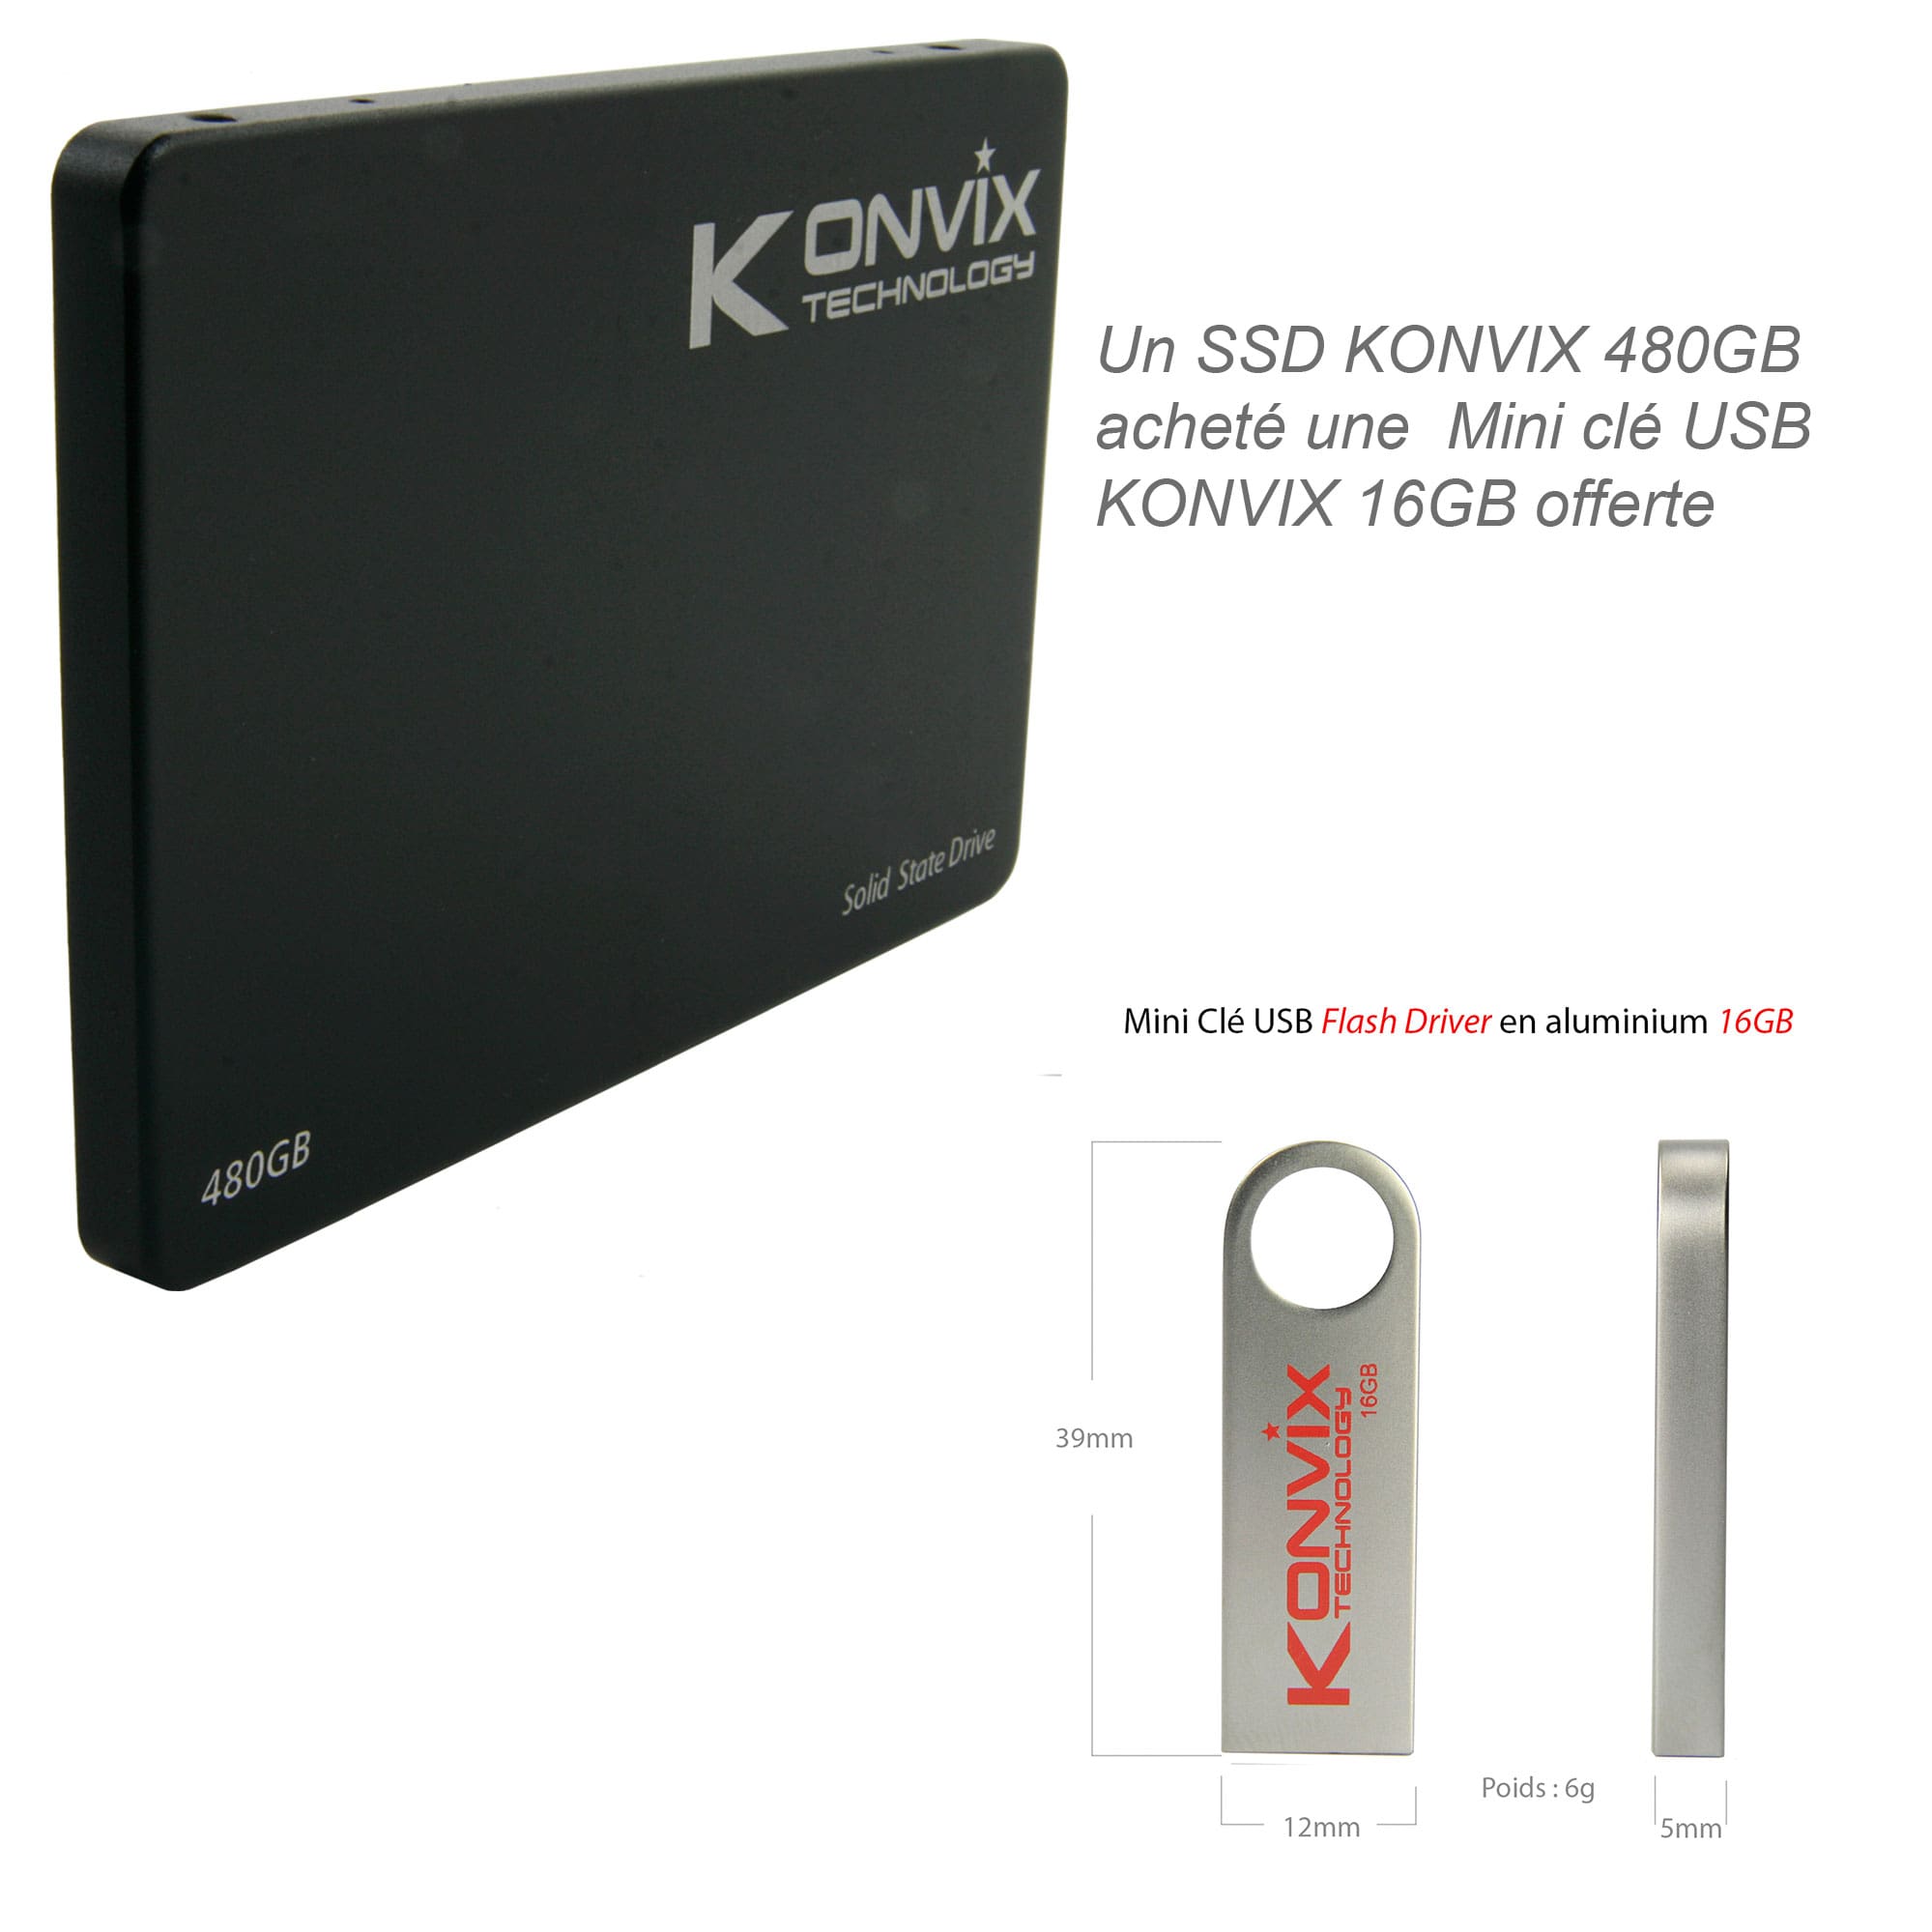 SSD Konvix 480GB SATA3 6Gb/s des technologies de stockage à l'état solide.